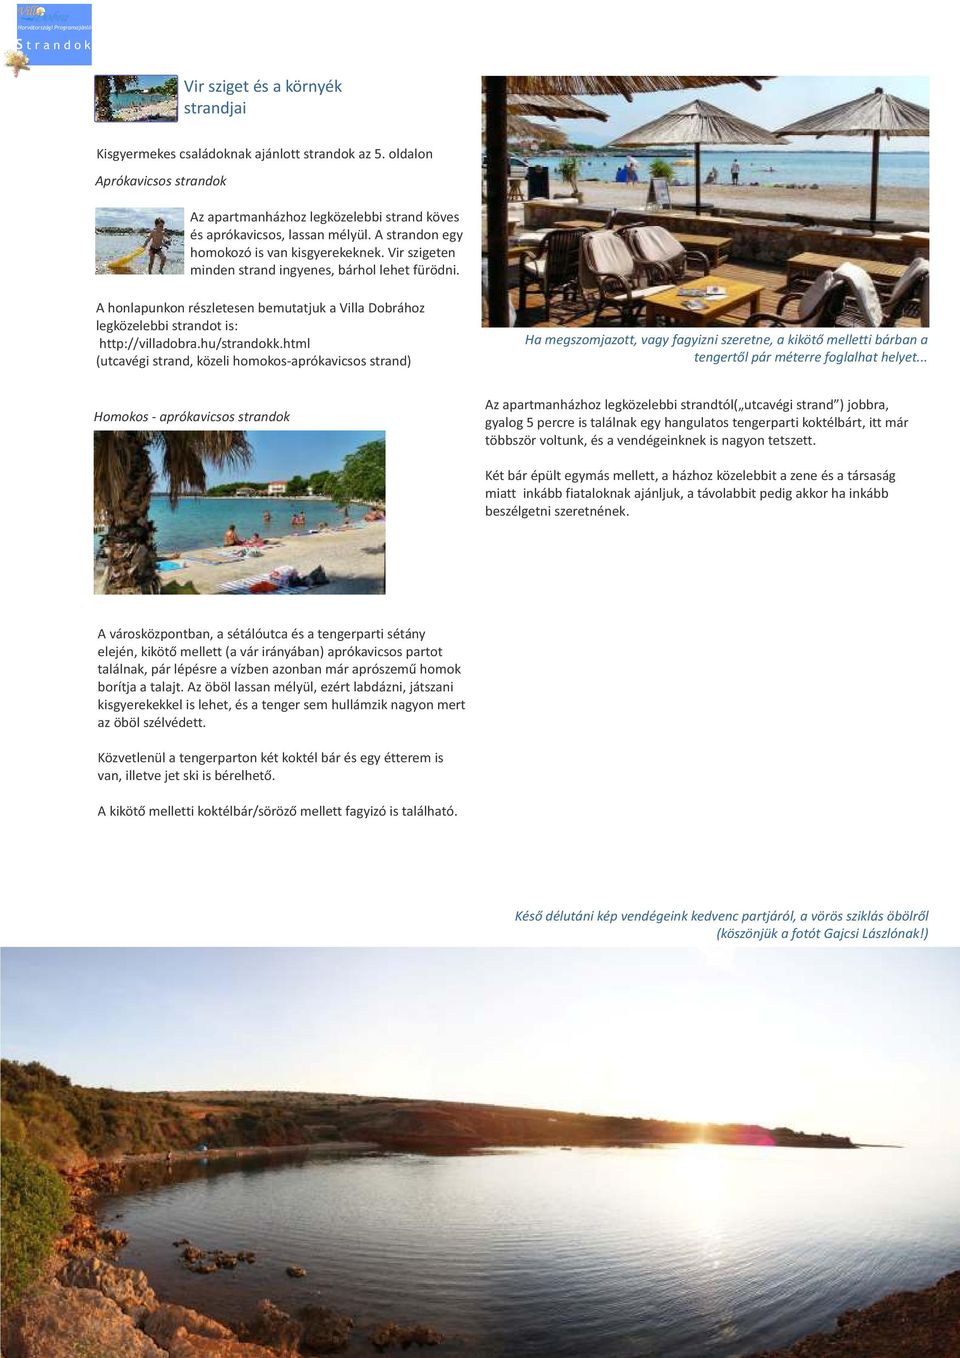 Vir szigeten minden strand ingyenes, bárhol lehet fürödni. A honlapunkon részletesen bemutatjuk a Villa Dobrához legközelebbi strandot is: http://villadobra.hu/strandokk.